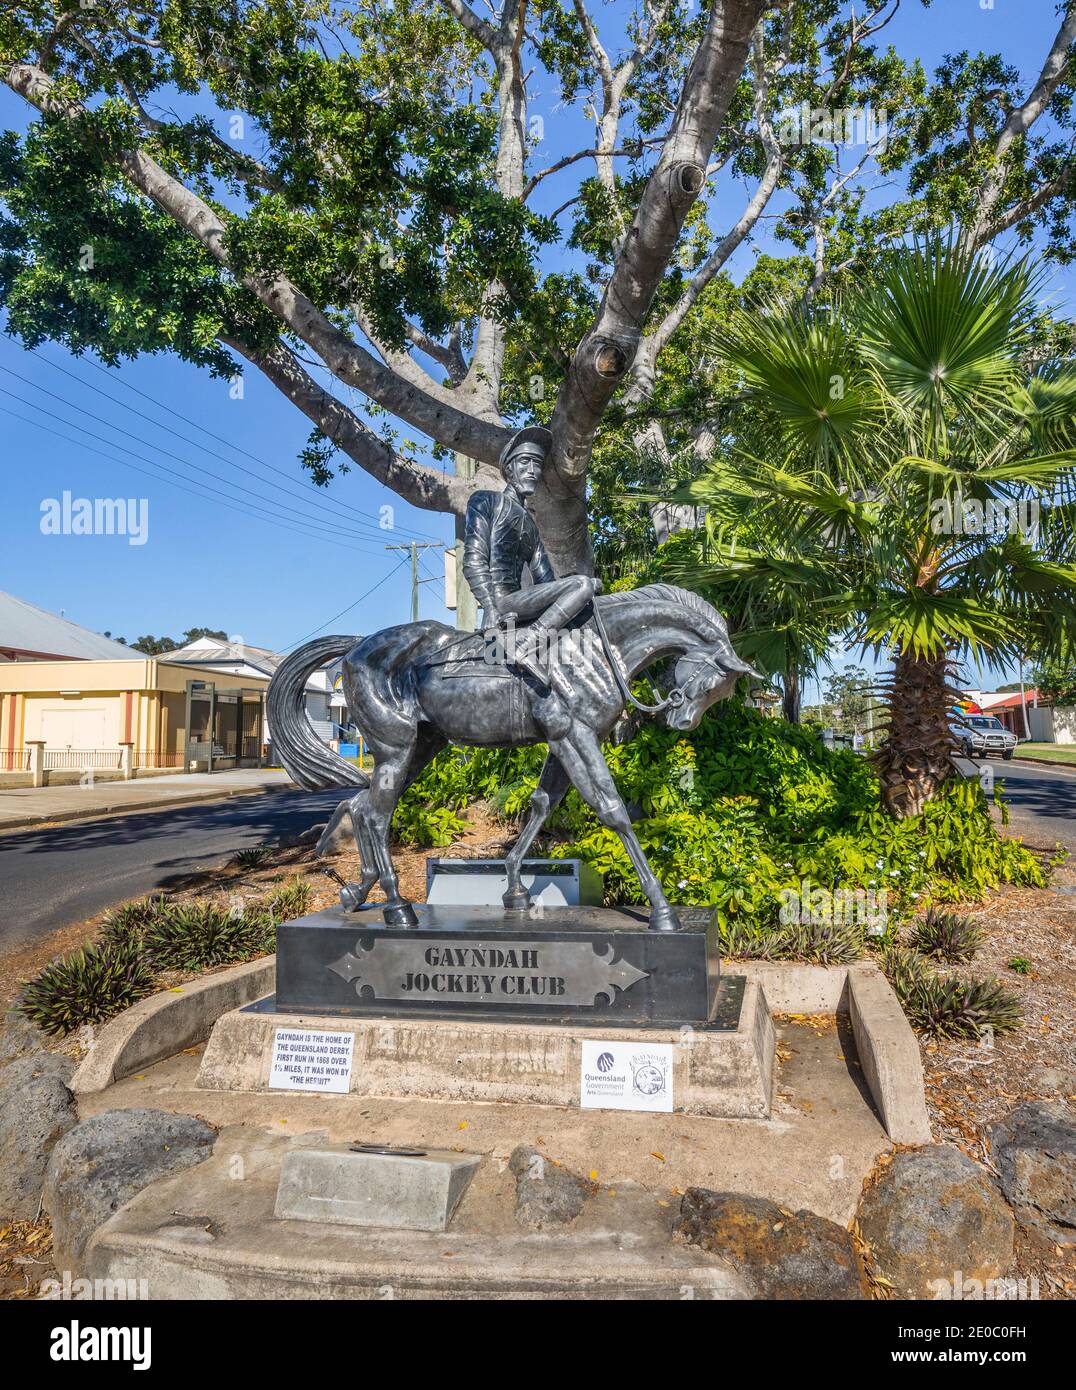 Gayndah Jockey Club Memorial rinde homenaje al establecimiento del deporte de carreras de caballos en Queensland, Gayndah, North Burnet Region, Queensland, aus Foto de stock